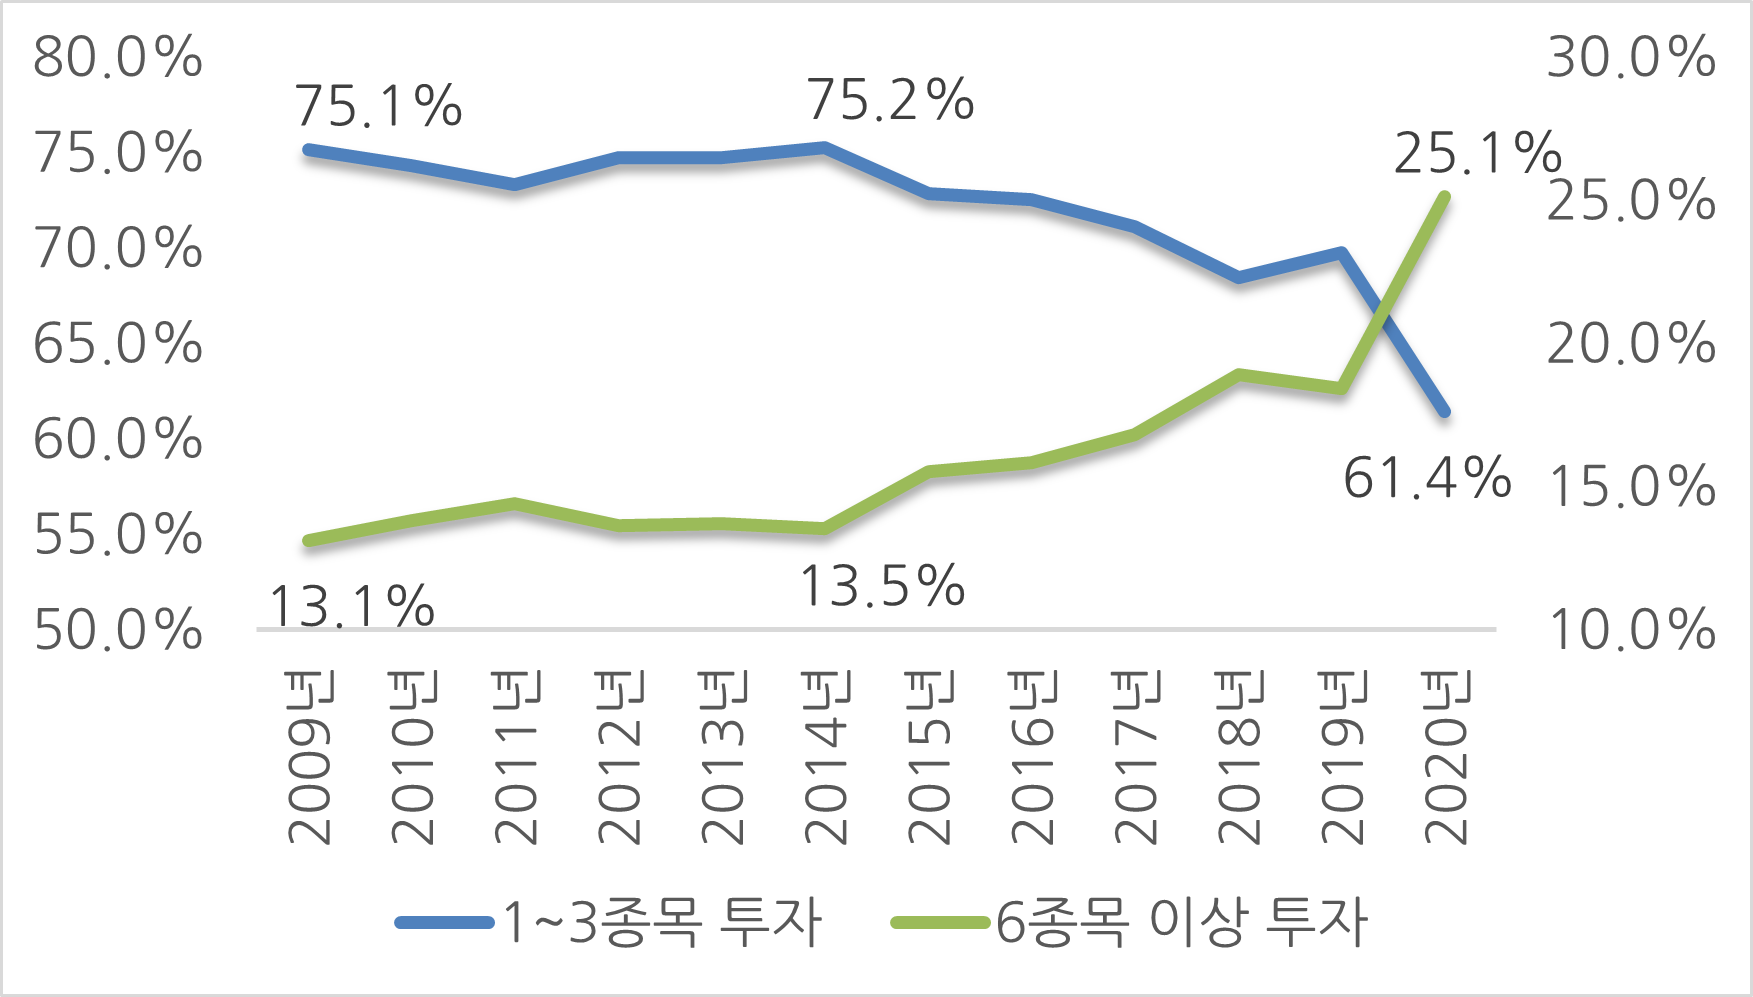 12월 결산법인 주주들의 보유 종목 수별 비중, 자료 : 한국예탁결제원